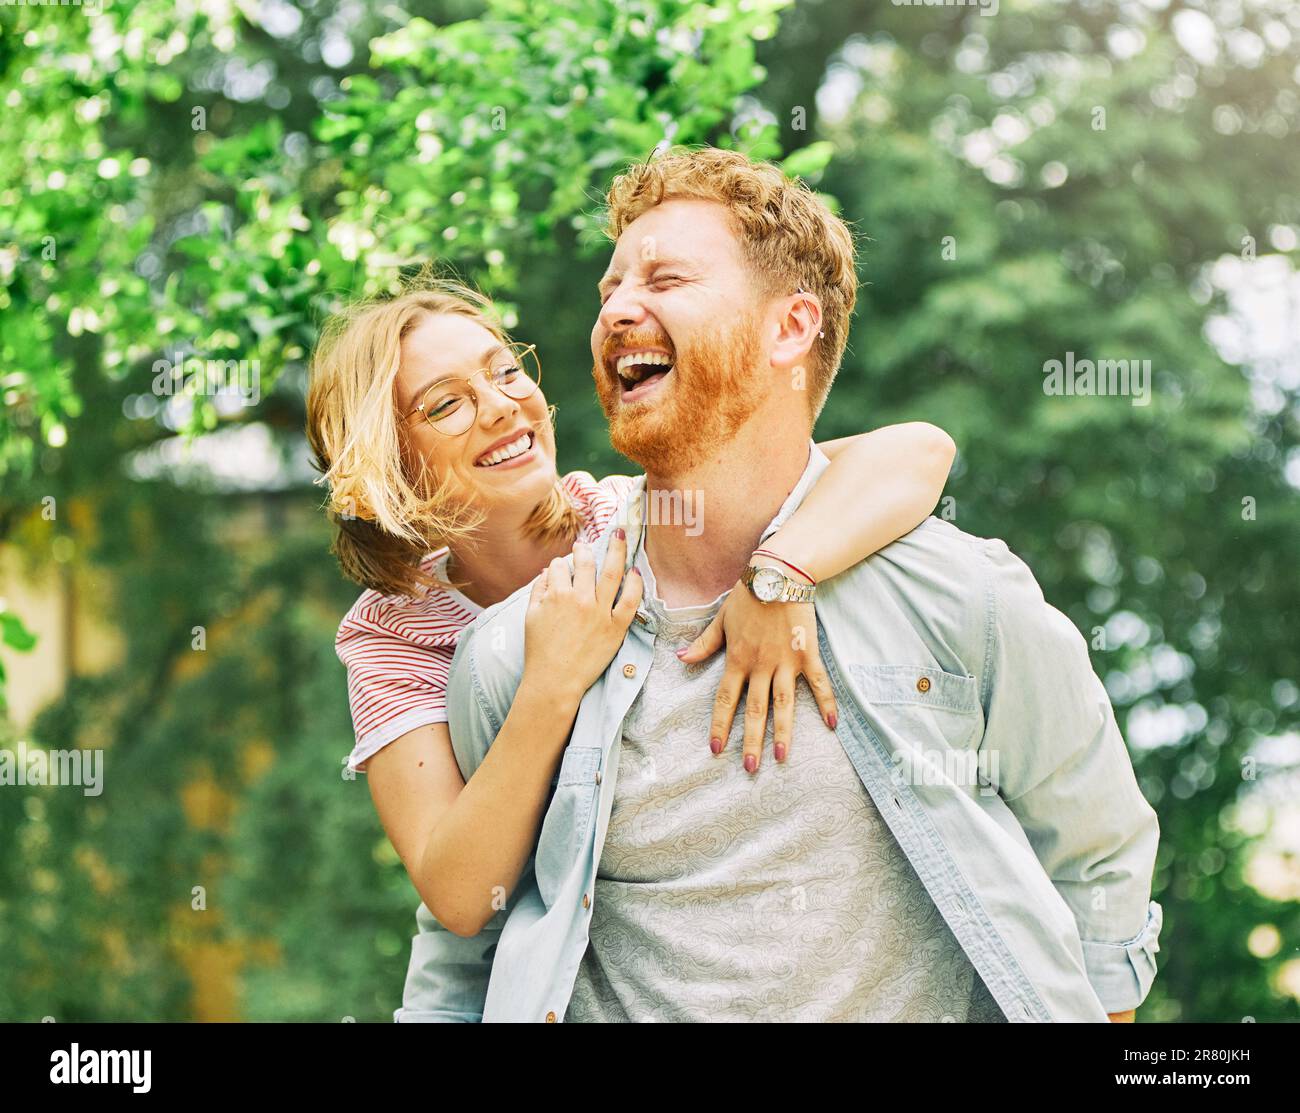 Porträt eines reizenden jungen Paares, das Spaß hat und gemeinsam im Freien lacht Stockfoto